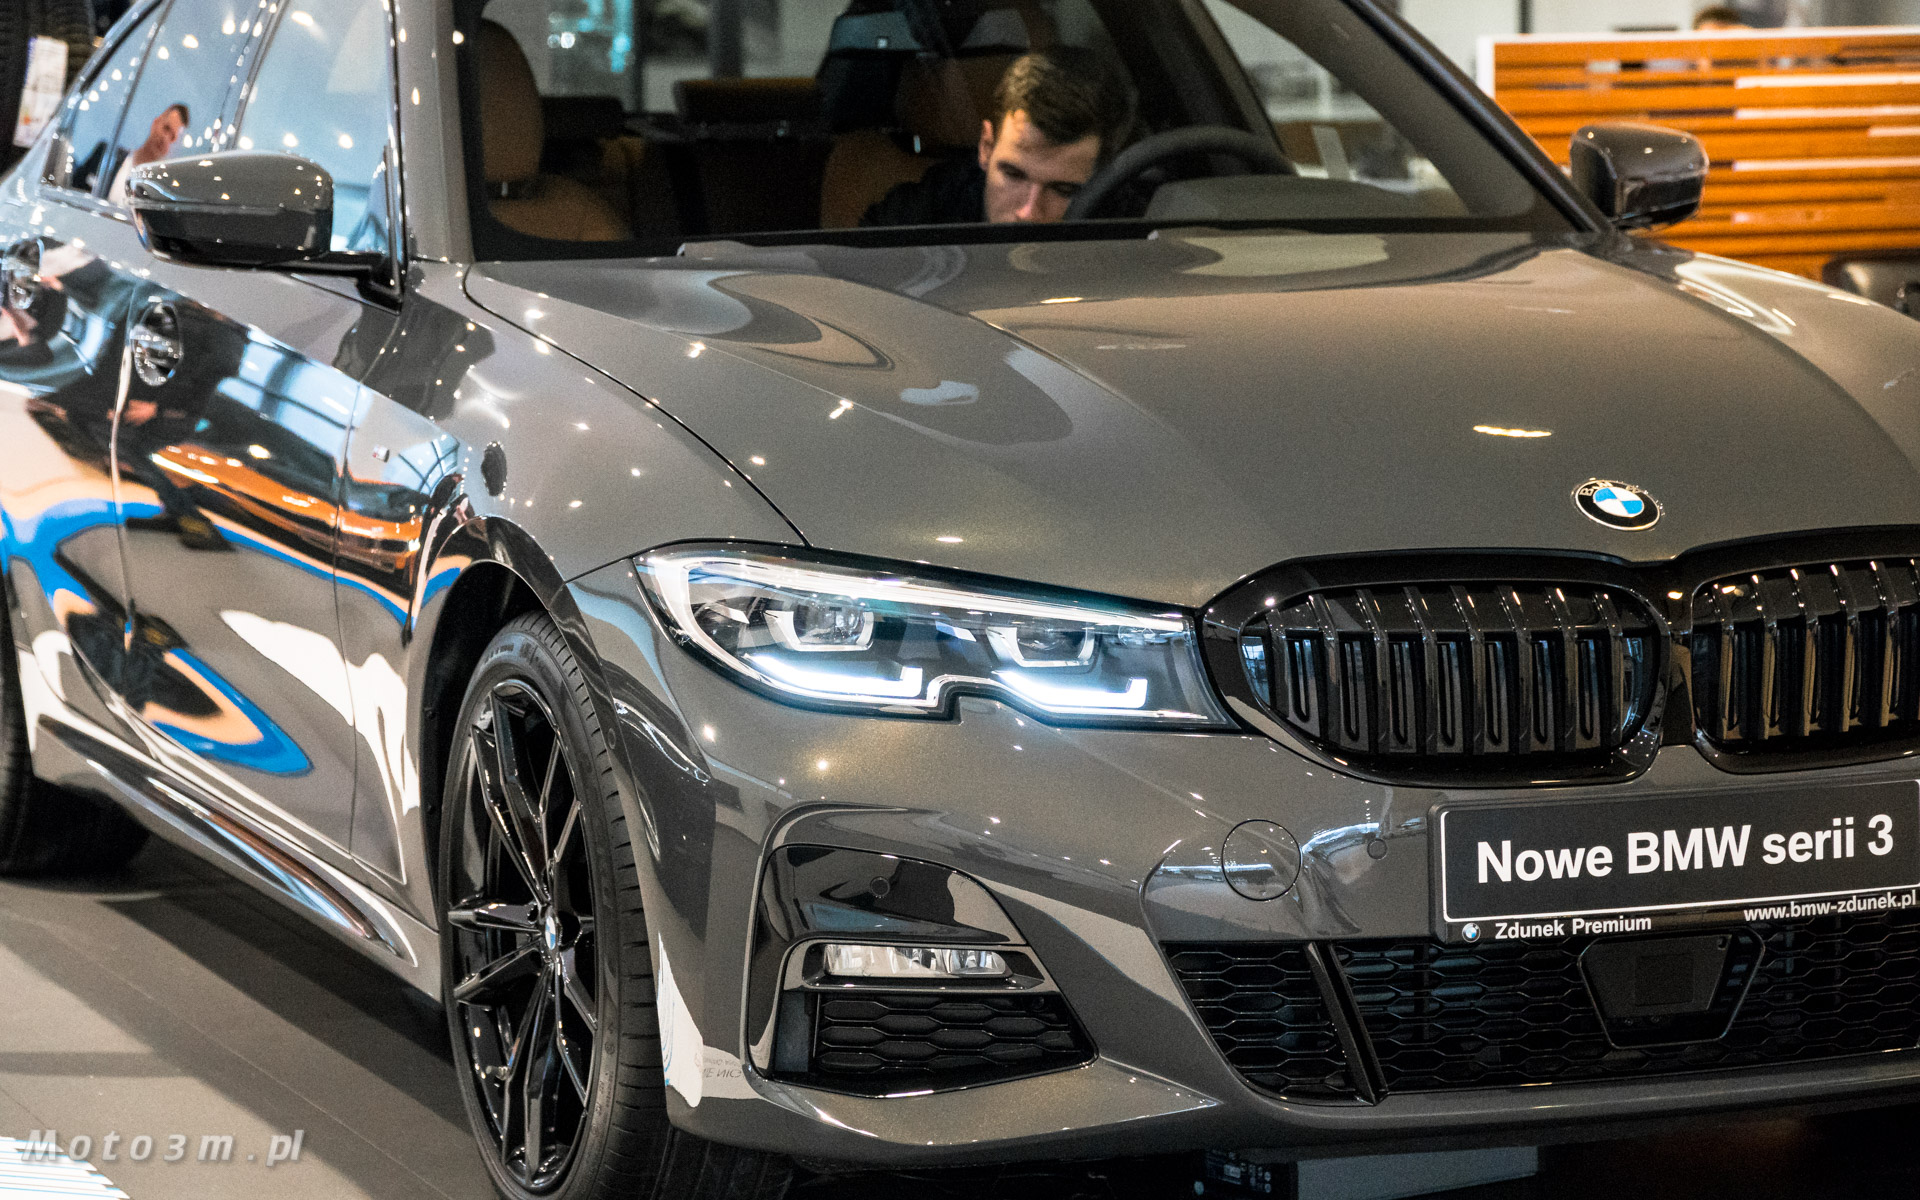 [Wideo] Nowe BMW Serii 3 G20 debiutuje w BMW Zdunek